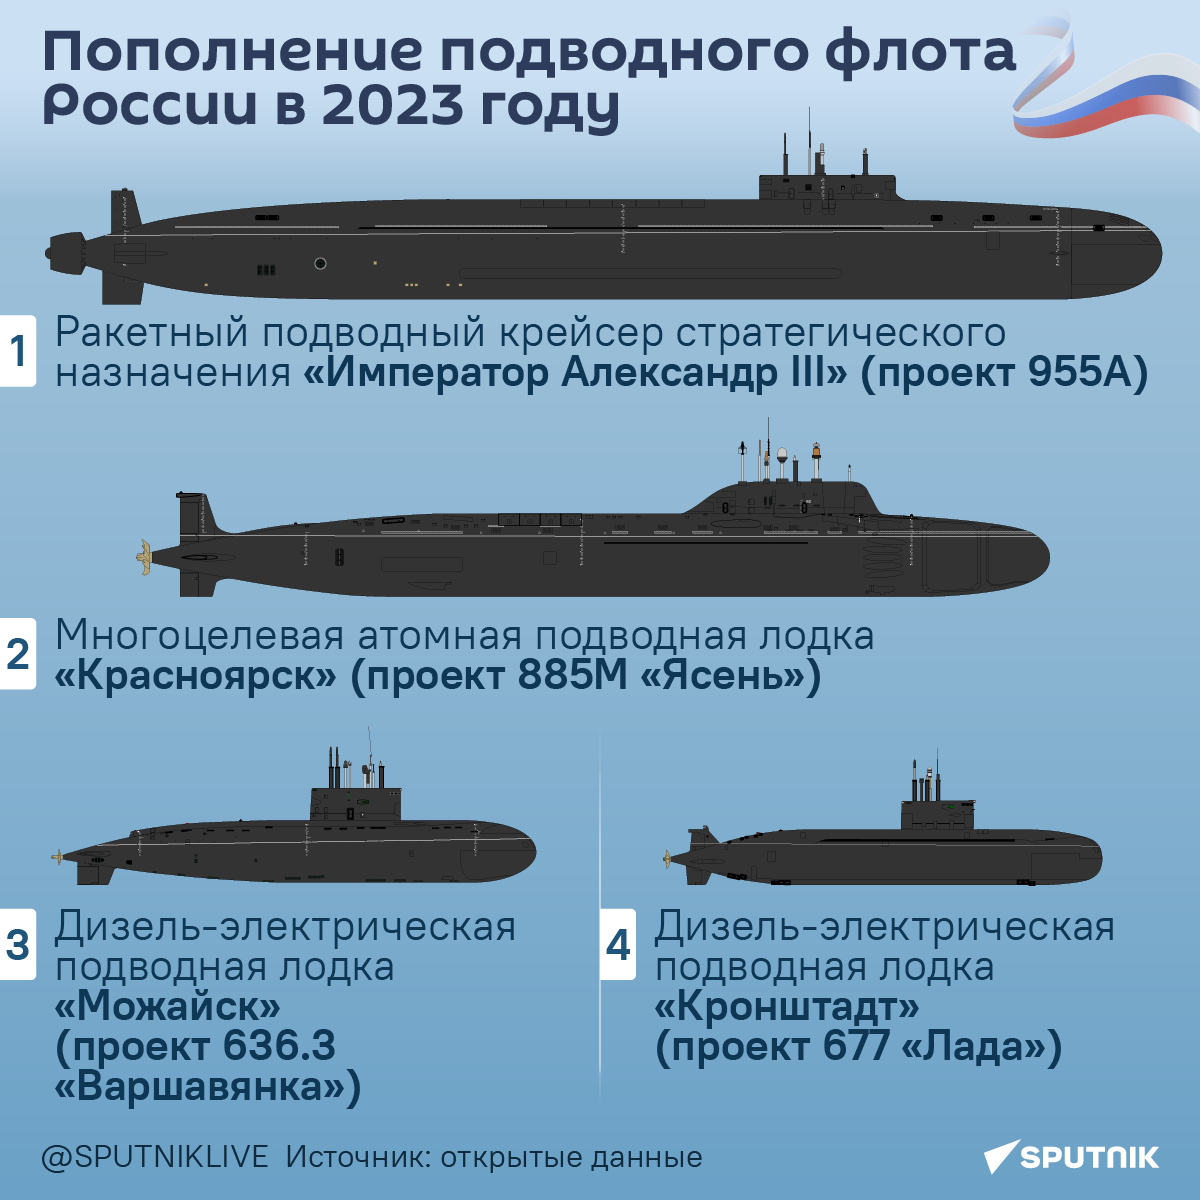 Пополнение подводного флота России в 2023 году. - Sputnik Узбекистан